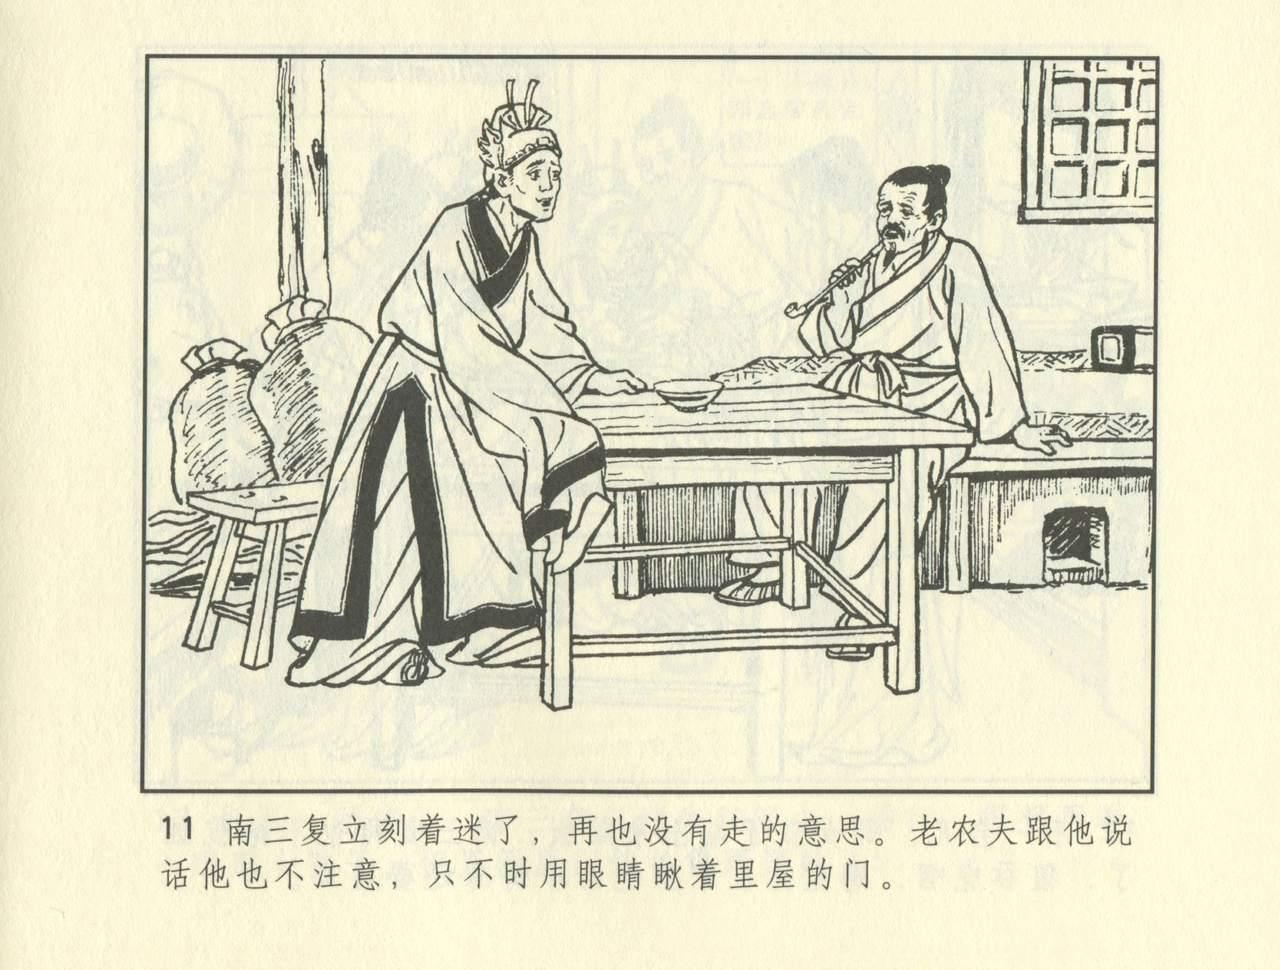 聊斋志异 张玮等绘 天津人民美术出版社 卷二十一 ~ 三十 220